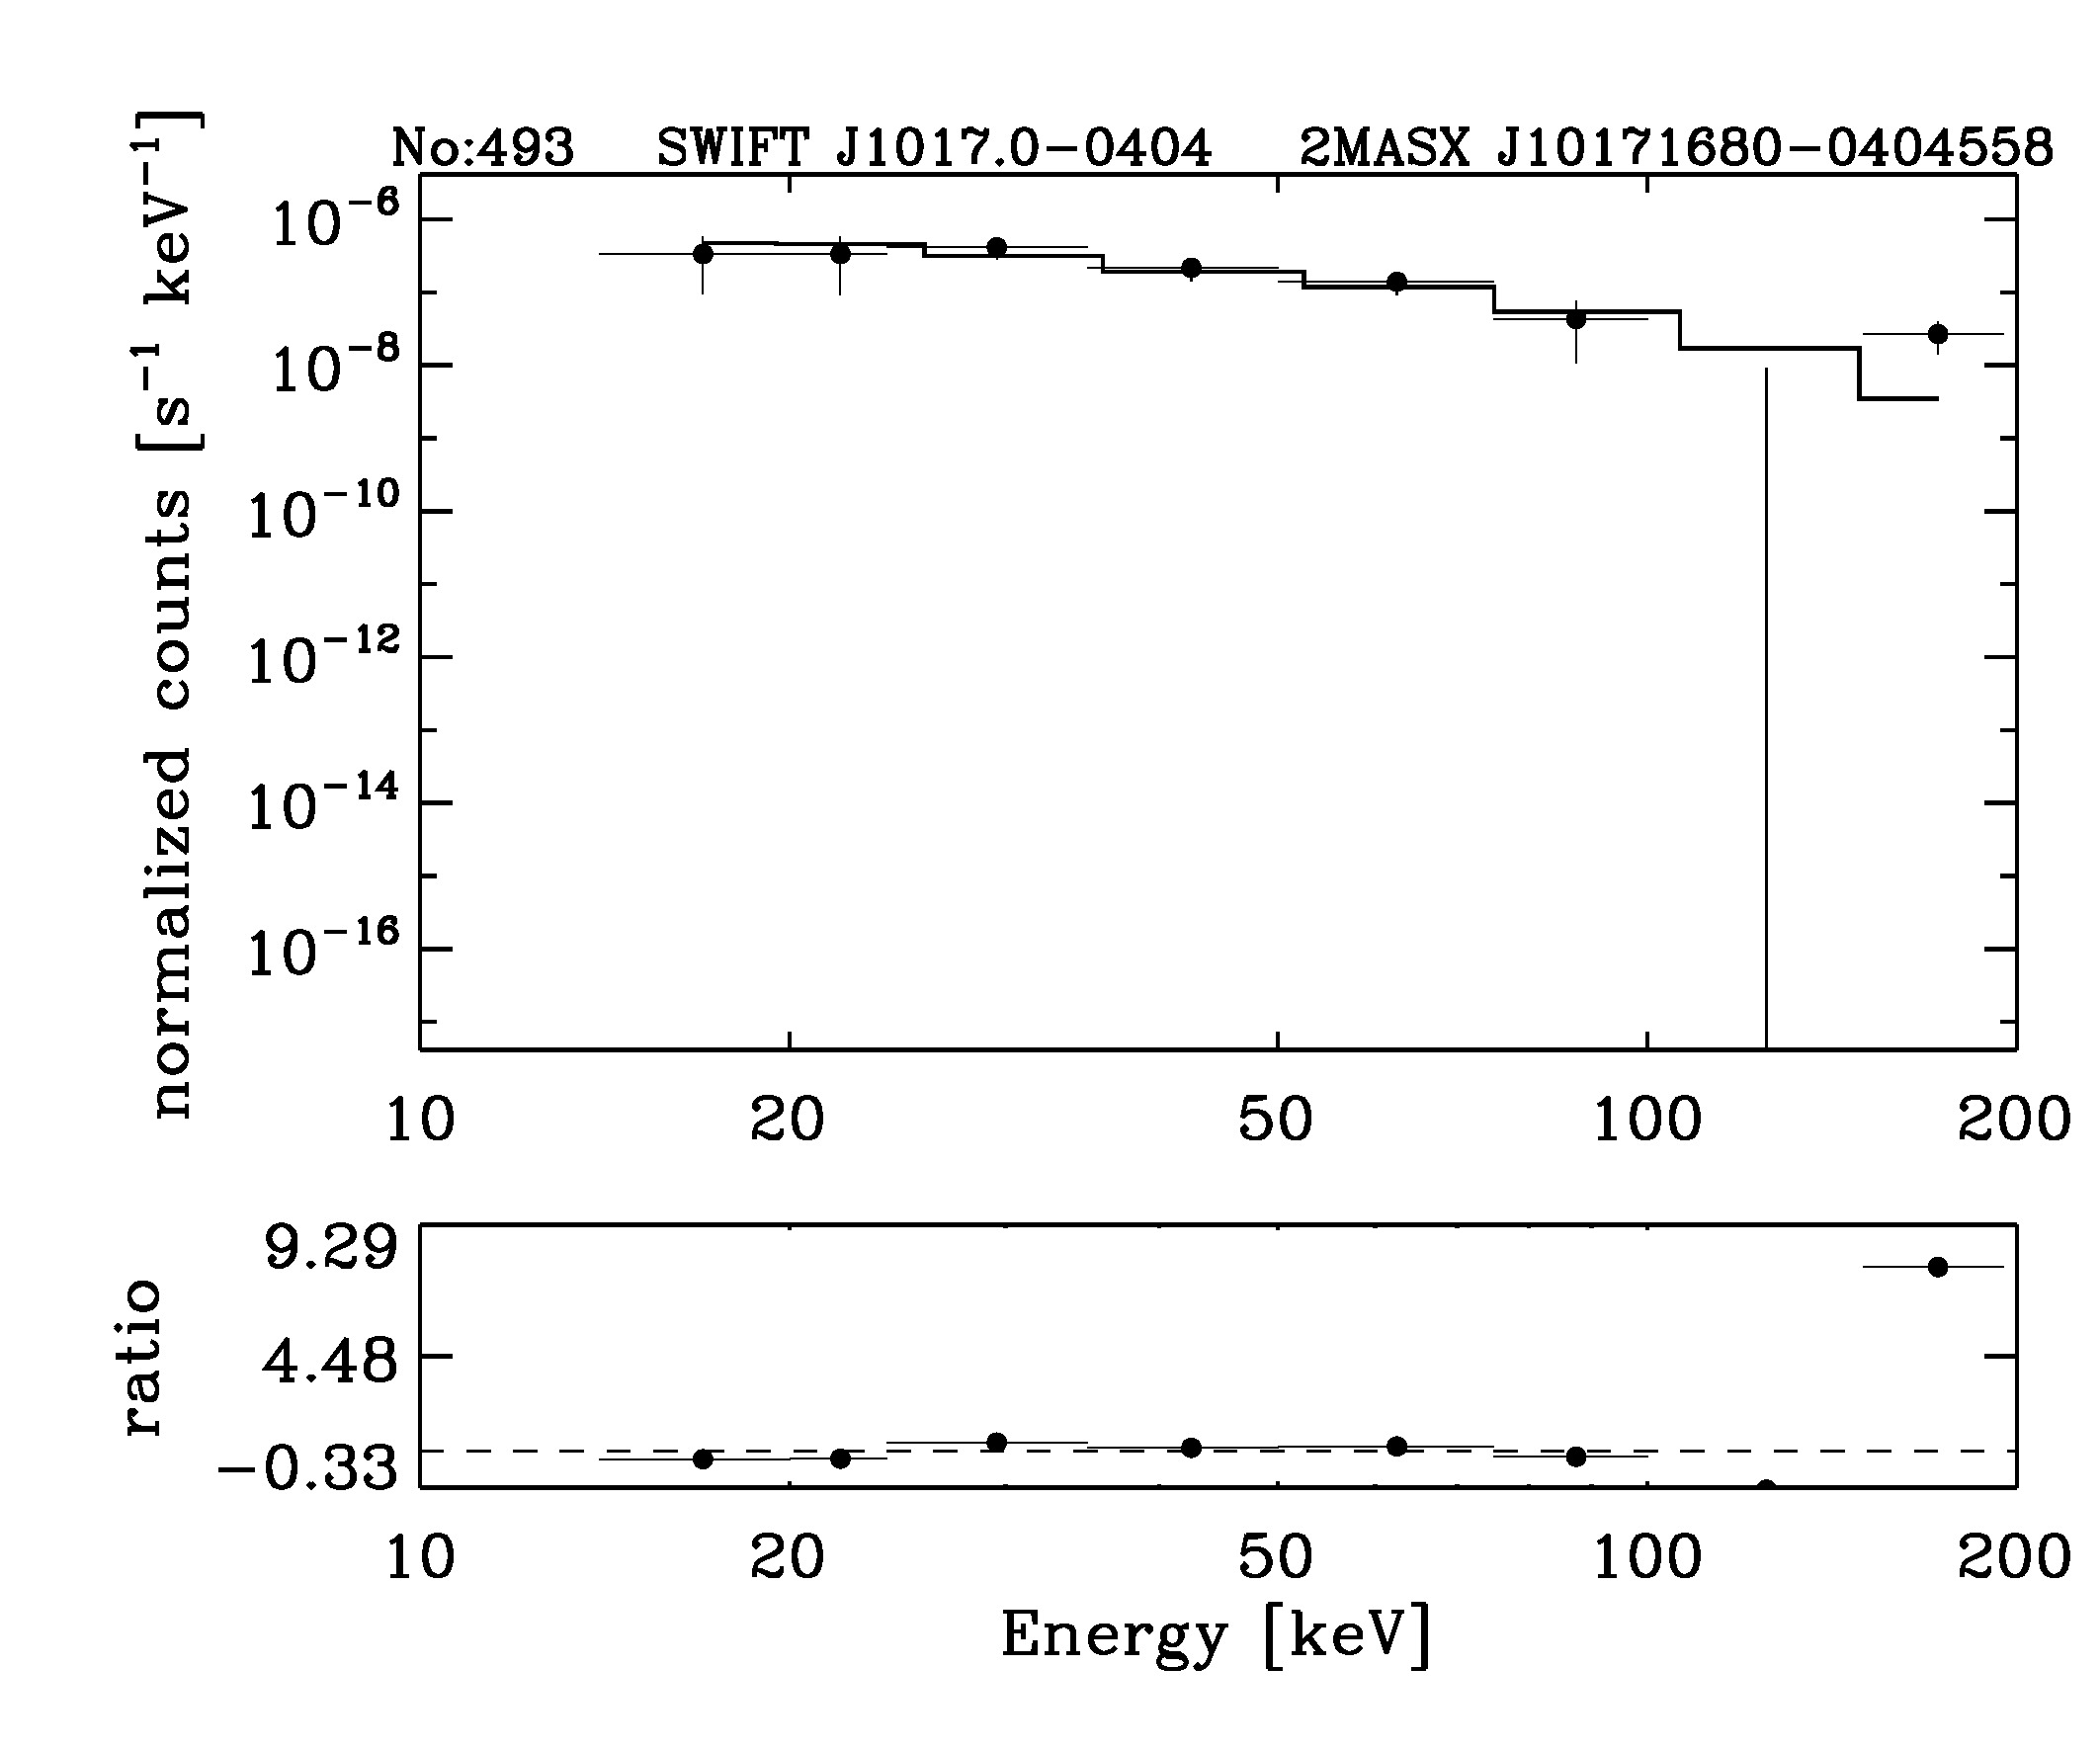 BAT Spectrum for SWIFT J1017.0-0404